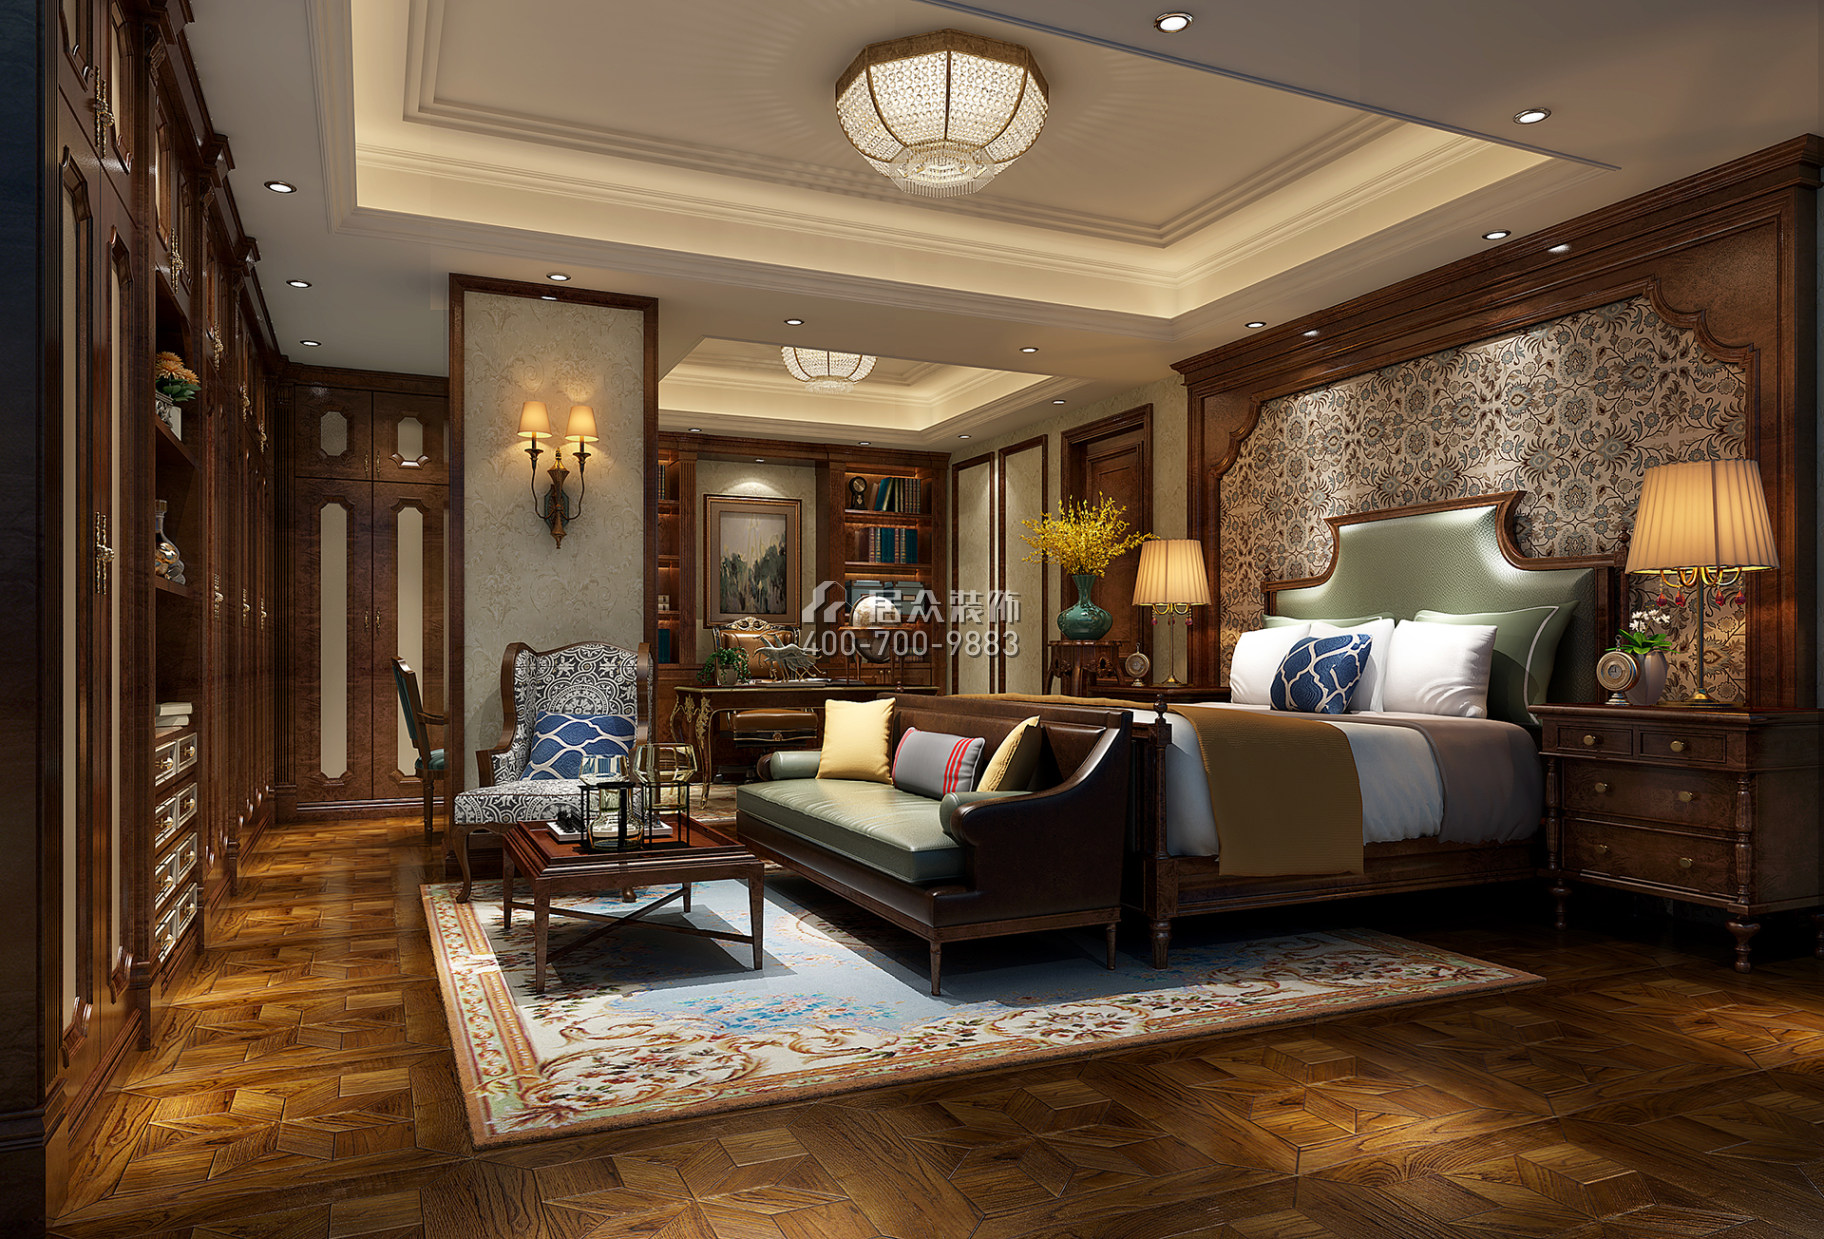 全盛紫悅龍庭165平方米美式風格復式戶型臥室裝修效果圖